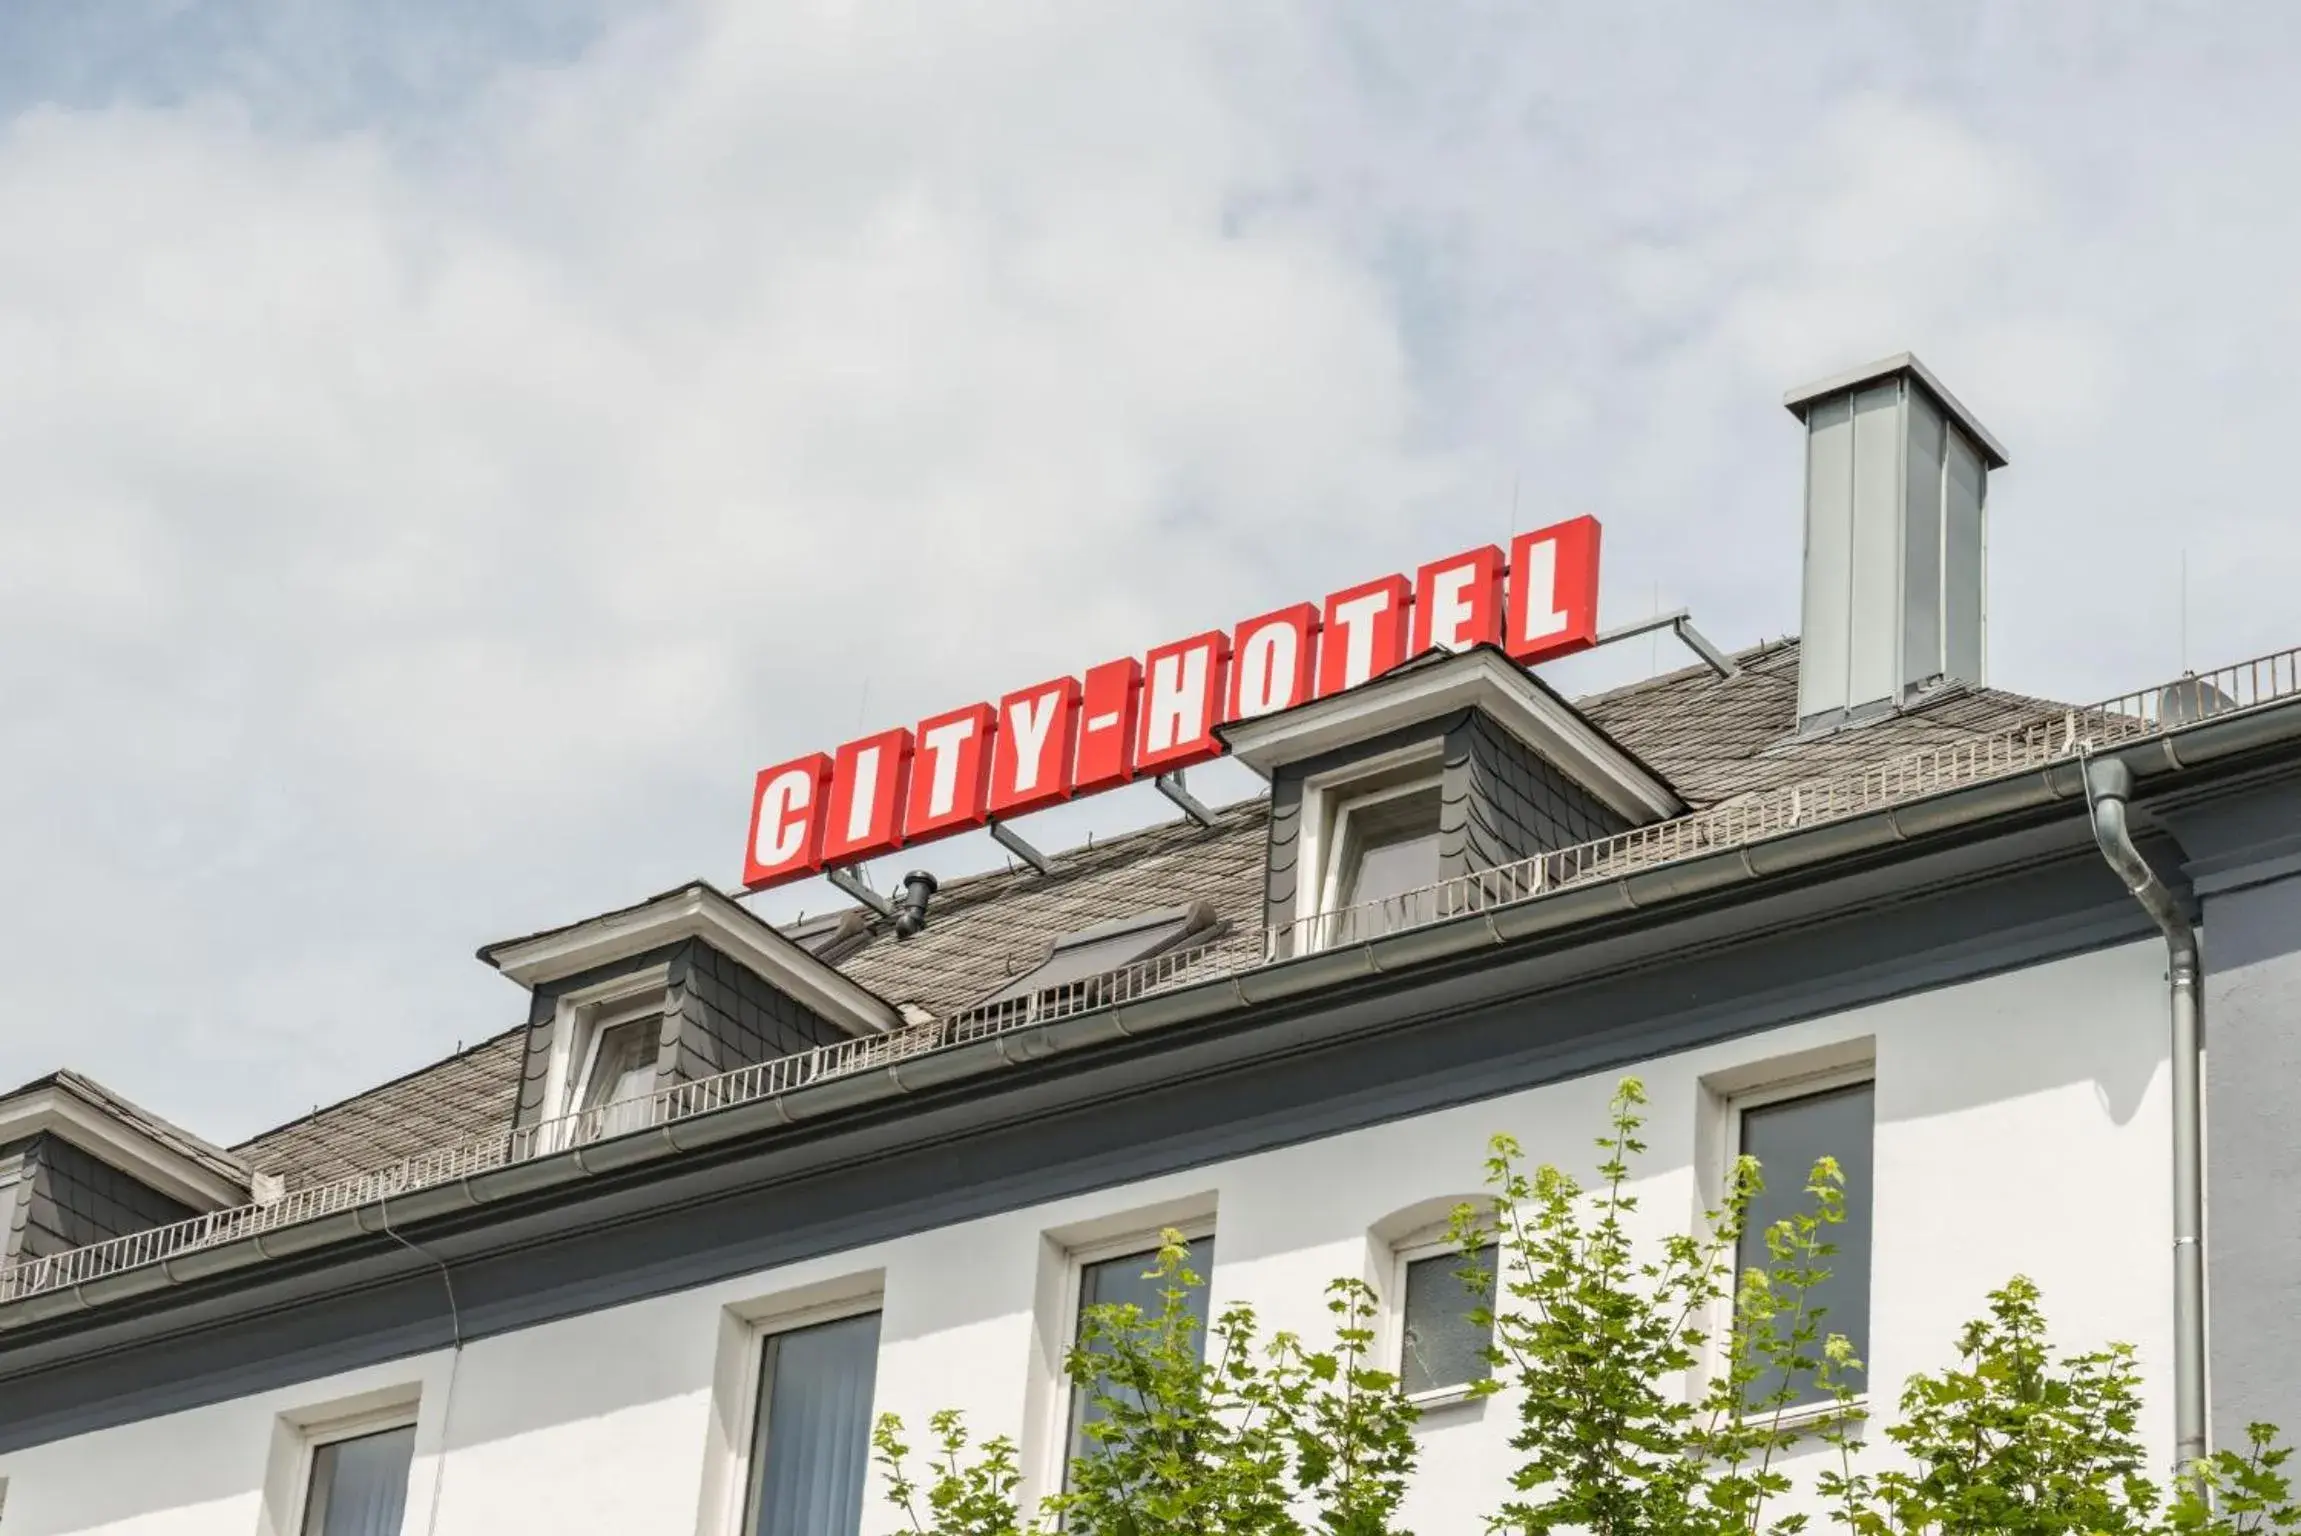 Property logo or sign, Facade/Entrance in City Hotel Wetzlar